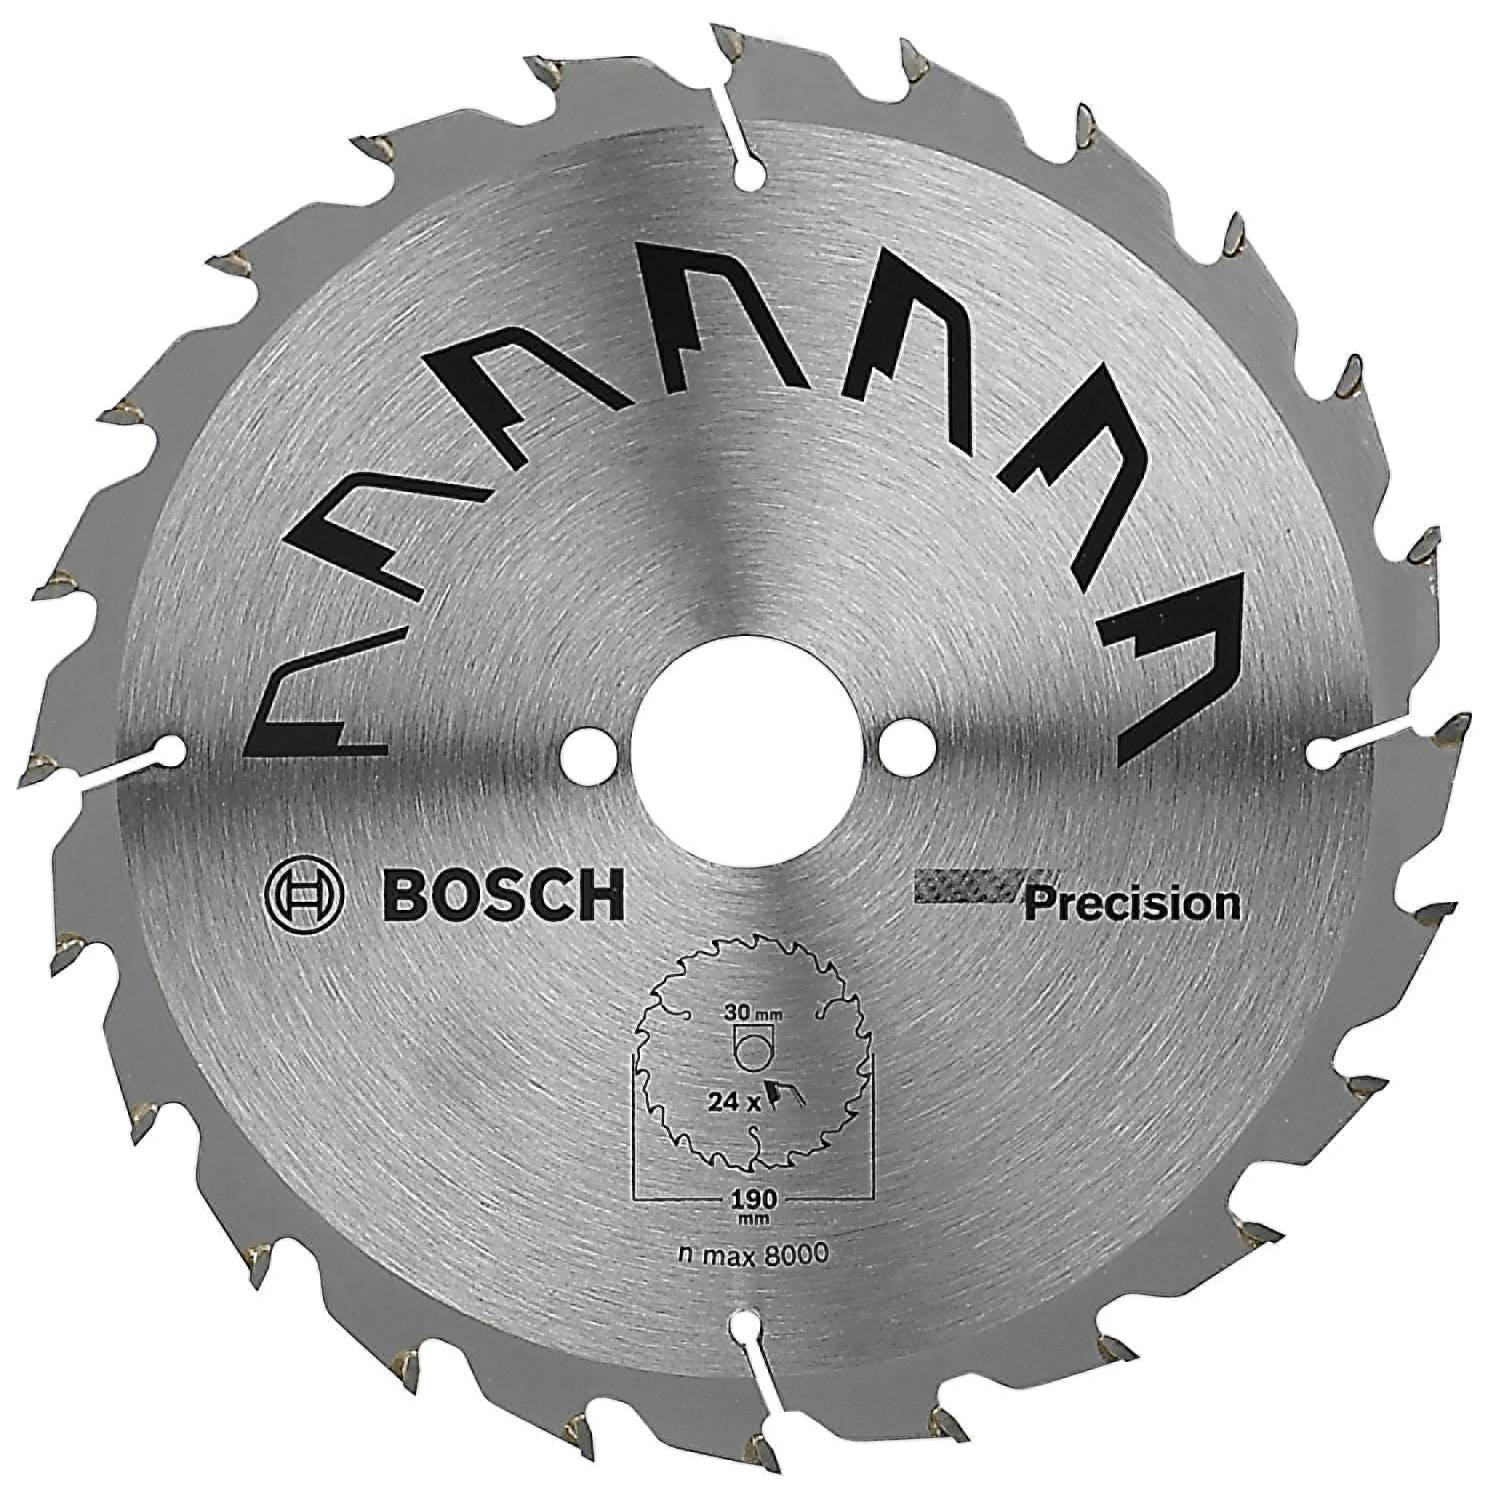 BOSCH 2 609 256 869 - Metall - 190 mm - Silber (2609256869)